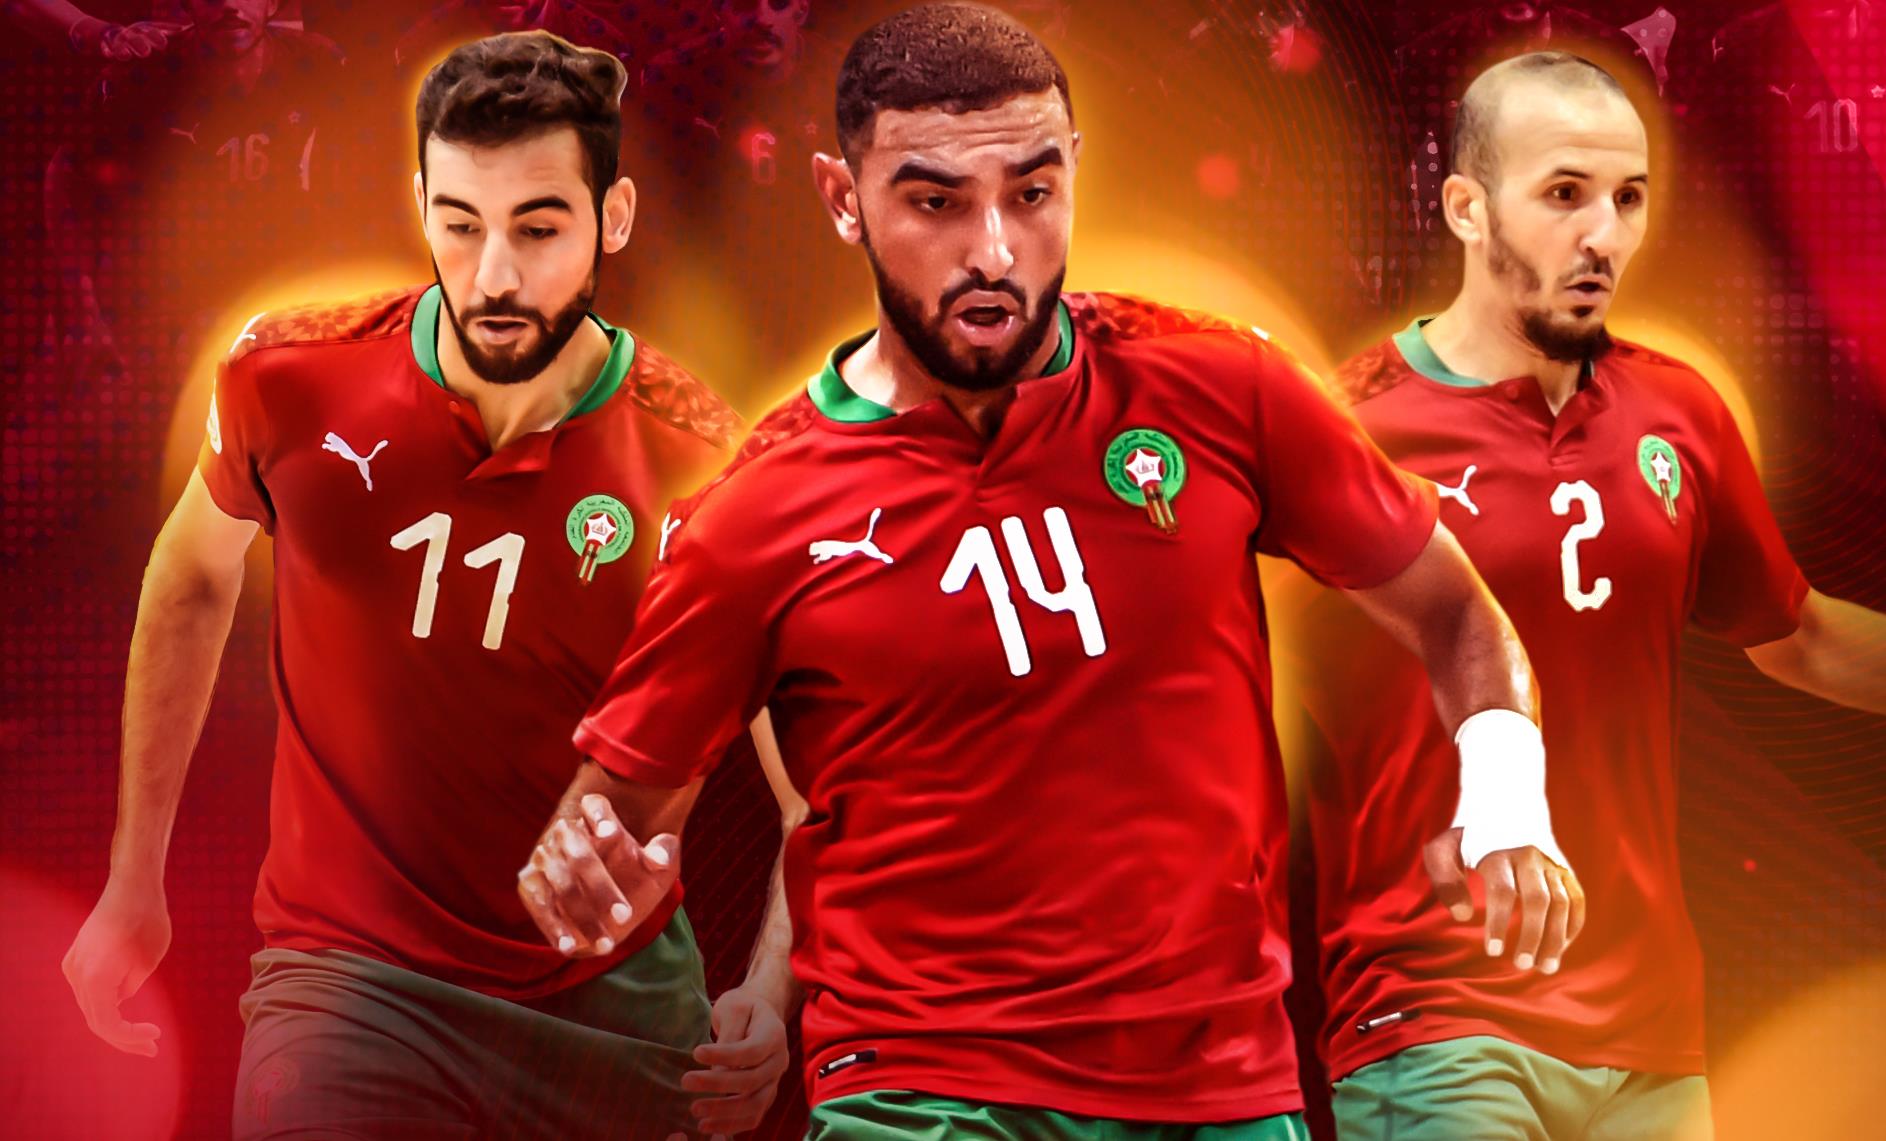 مباراتان وديتان للمنتخب المغربي لكرة القدم داخل القاعة ضد نظيره البرازيلي يومي 7 و9 أكتوبر المقبل